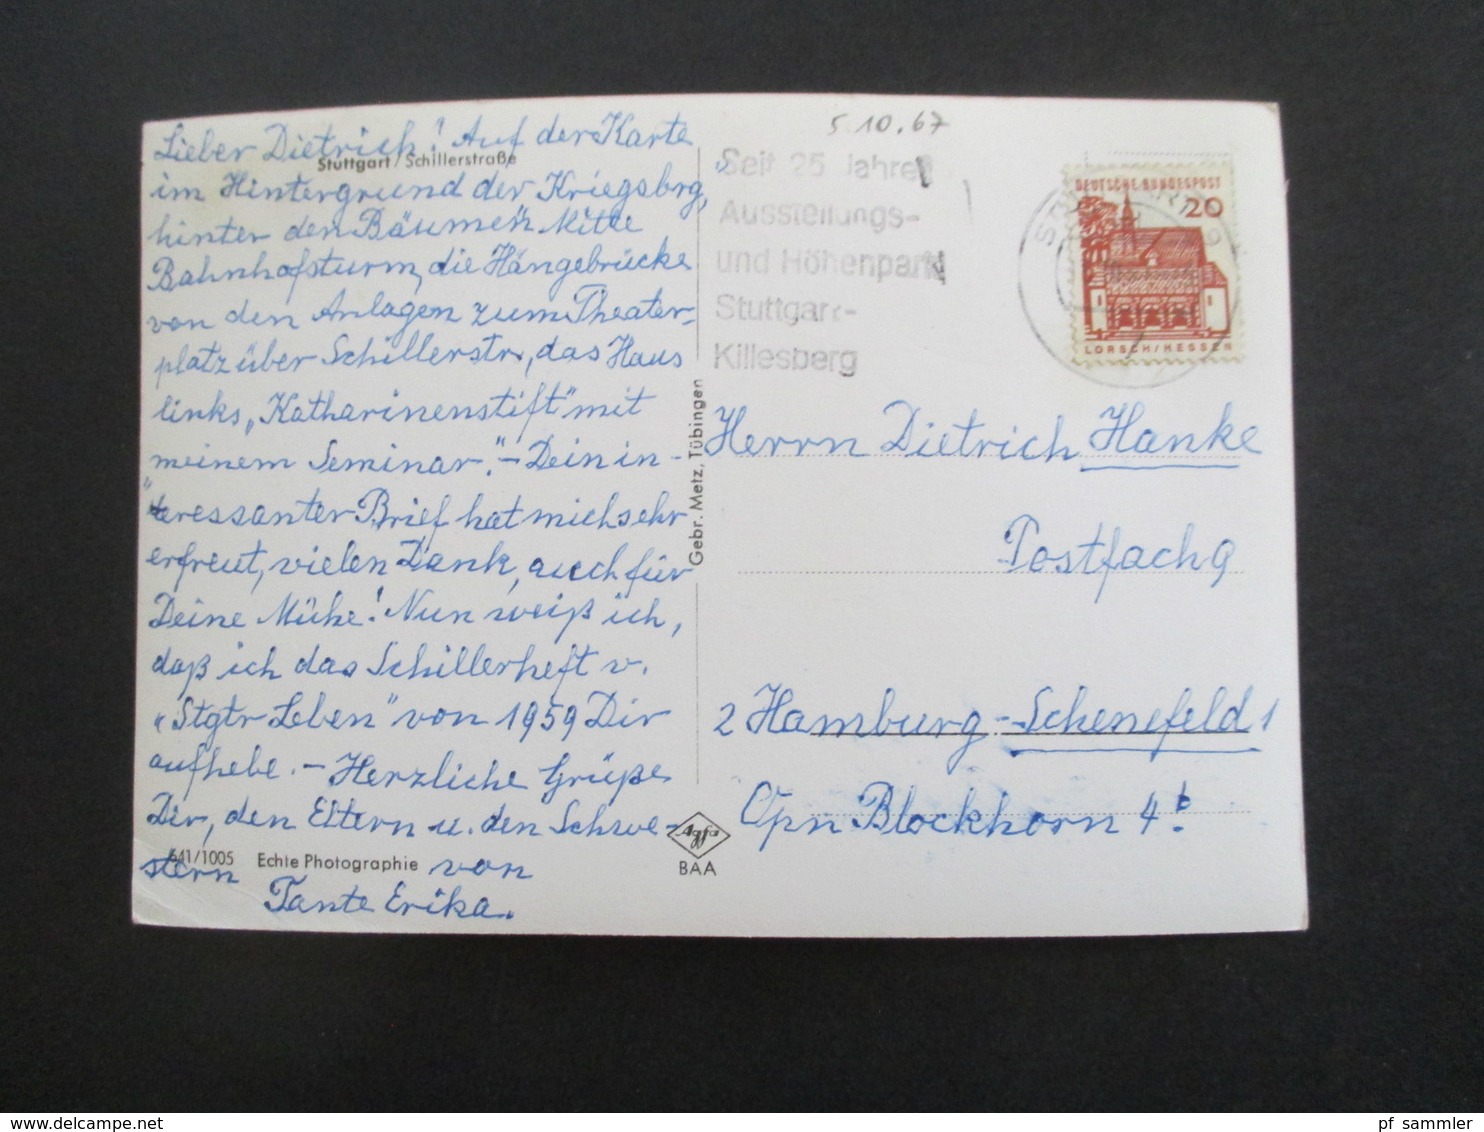 AK 1930er Jahre bis Anfang 1960 insgesamt 21 Karten mit verschiedenen Motiven Stuttgart